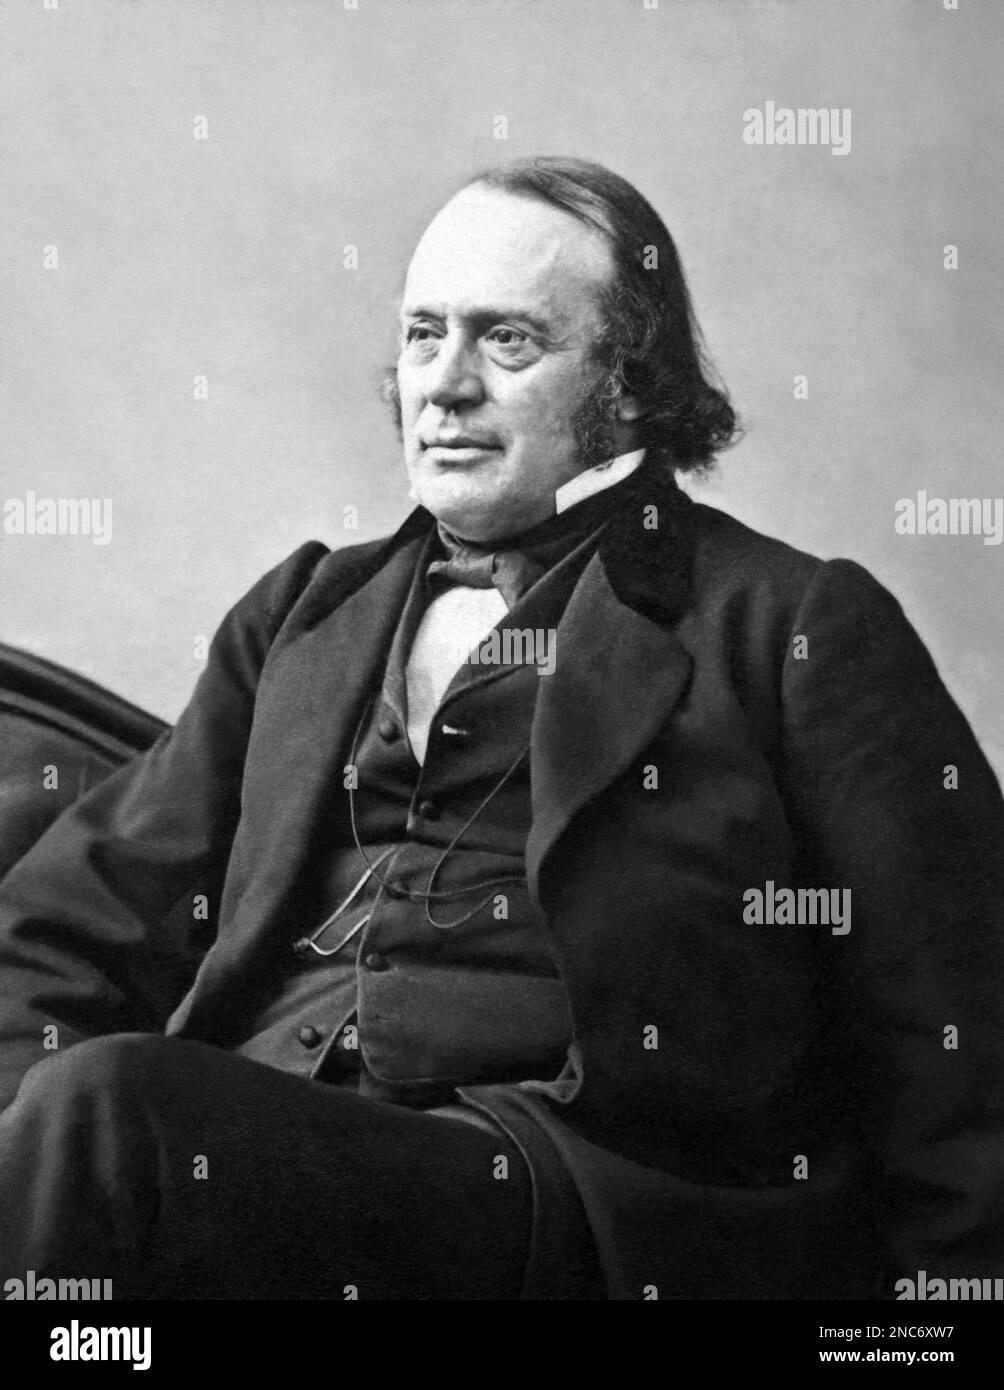 Louis Agassiz (1807-1873), famoso geologo, zoologo, paleontologo e scienziato naturale svizzero-americano, è stato professore all'Università di Harvard e critico della teoria dell'evoluzione di Darwin. (c1864 Foto di A. Sonrel) Foto Stock